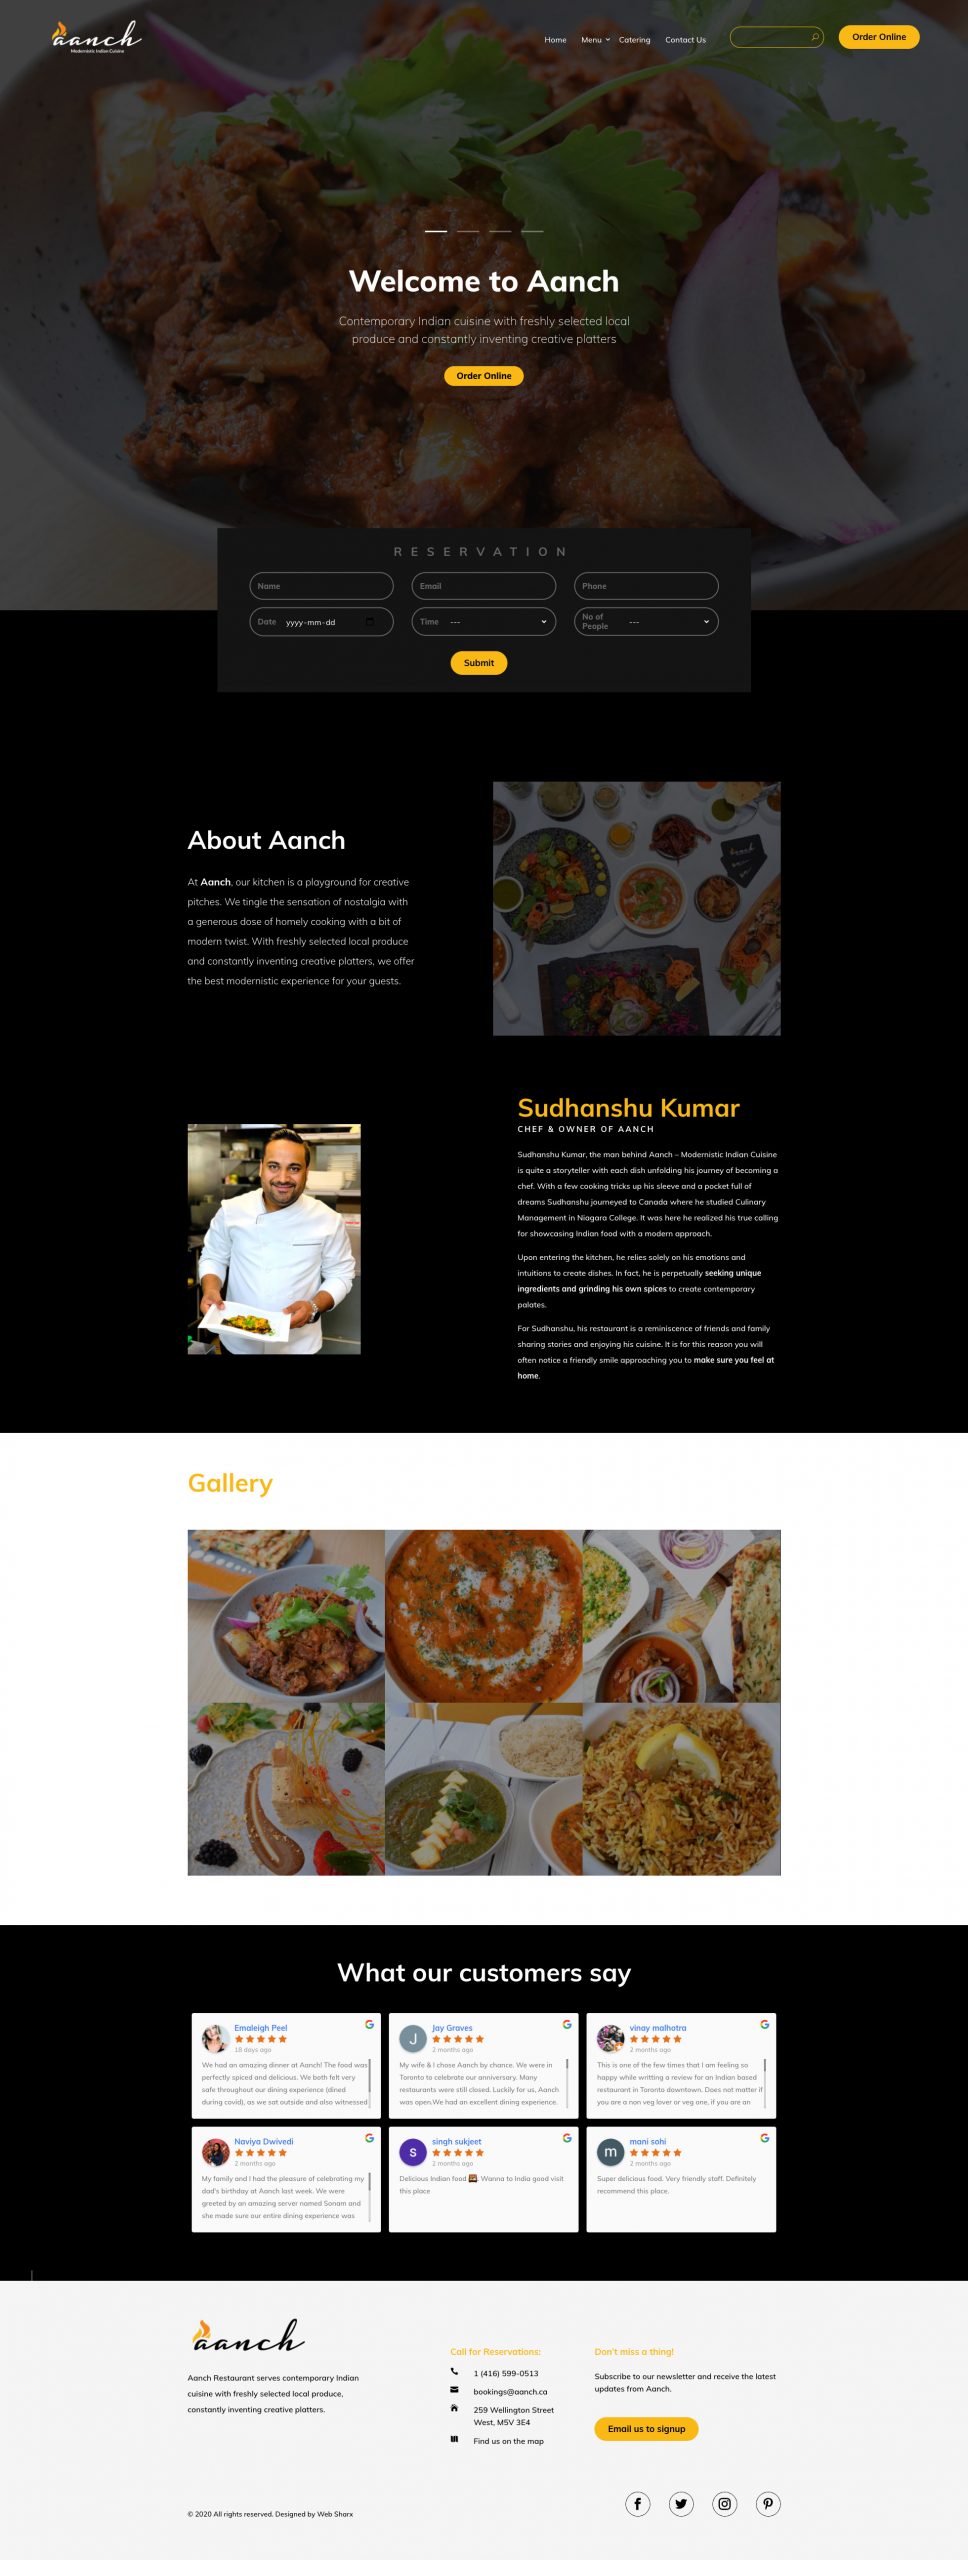 Aanch Restaurant website design